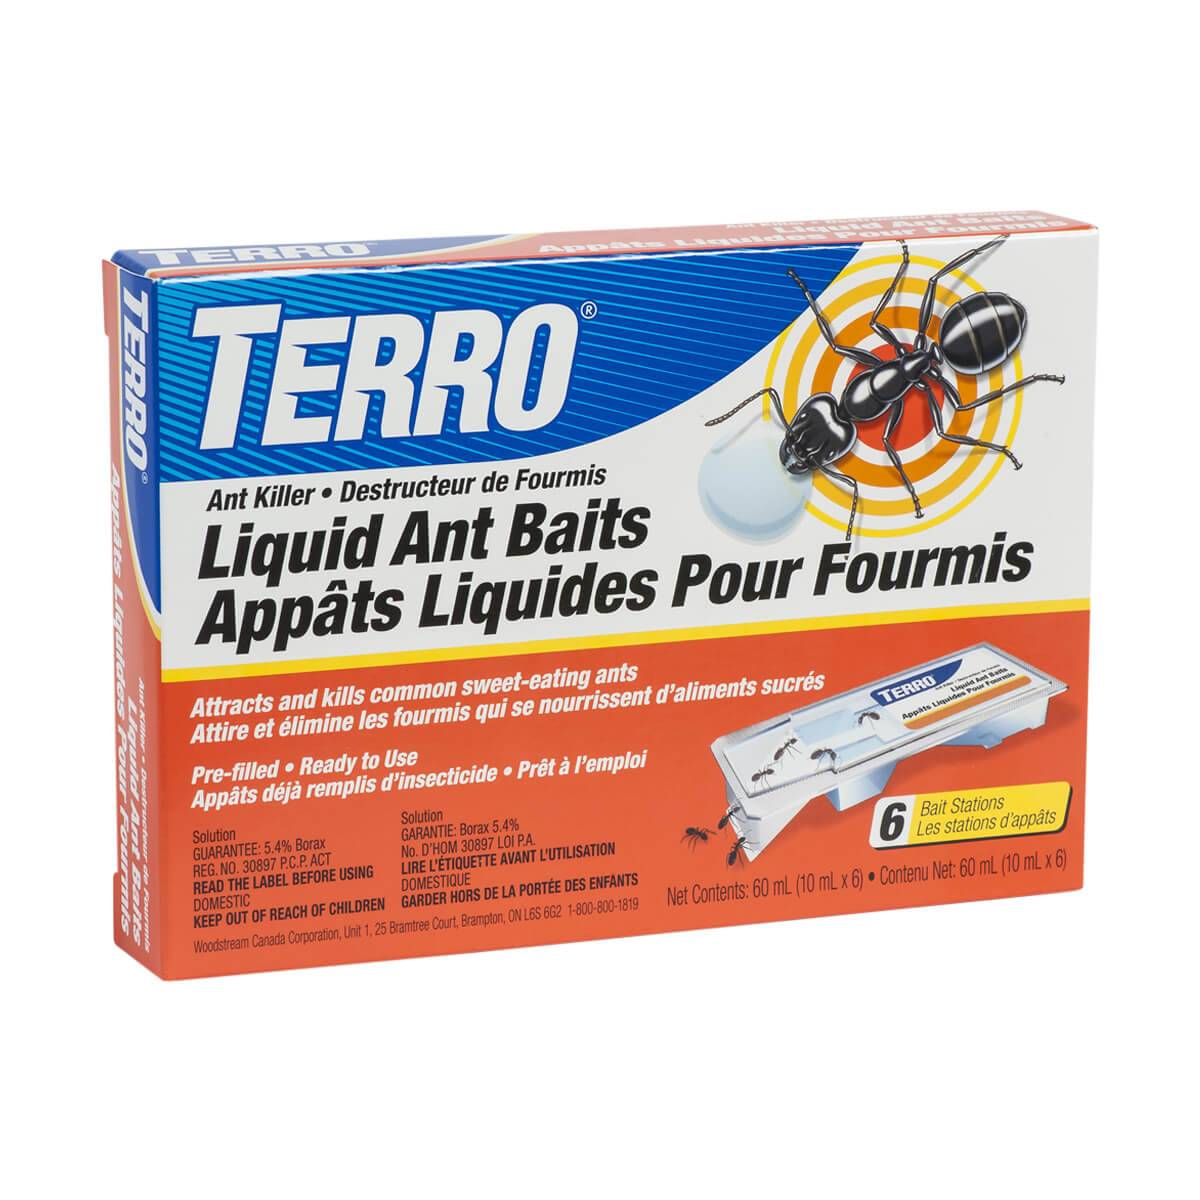 Liquid Ant Baits - 6 Pack